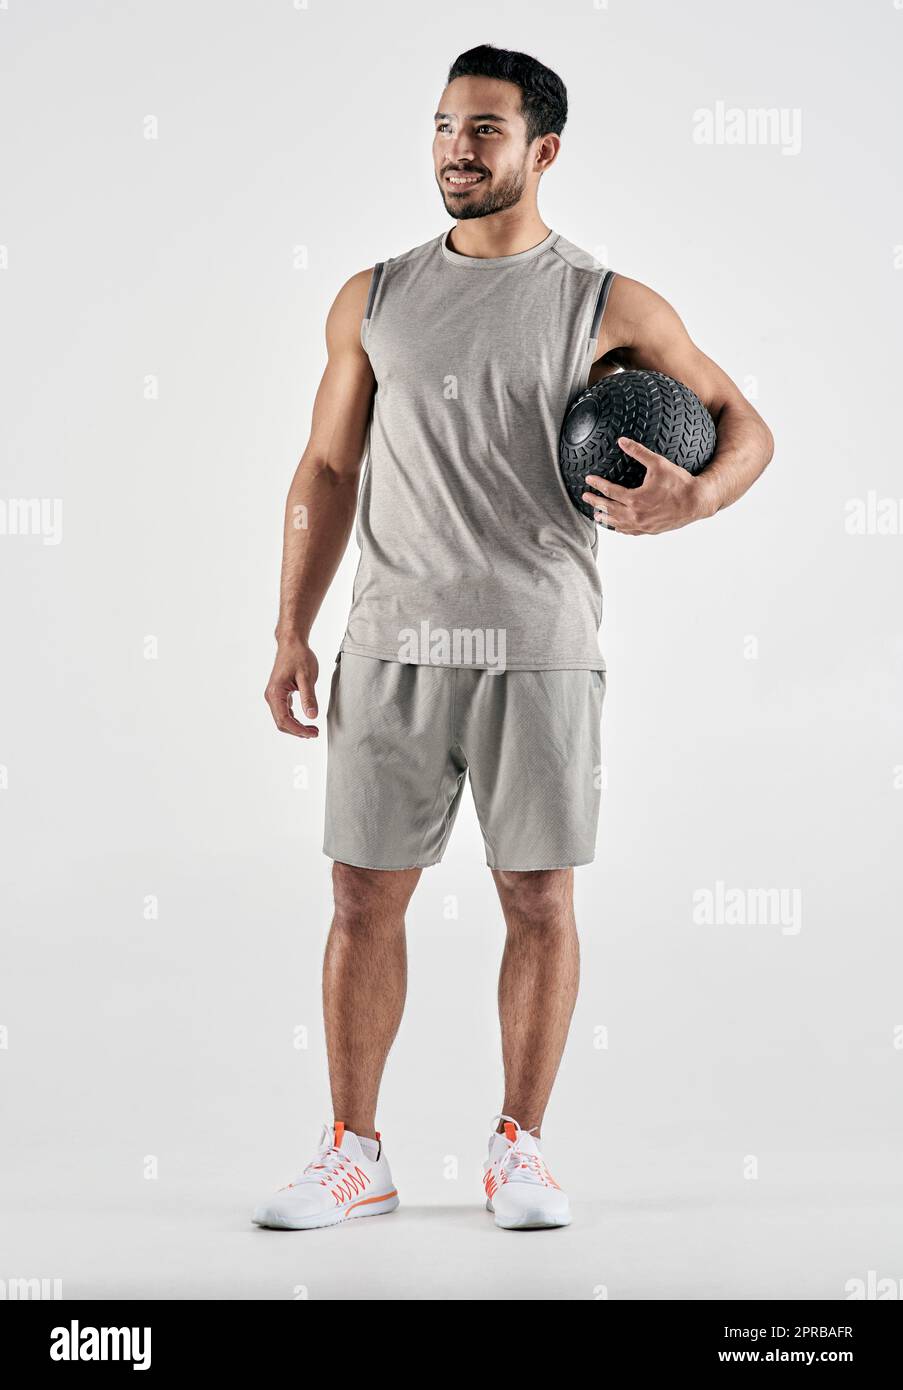 Ich bin stolz darauf, wie weit ich gekommen bin. Studioaufnahme eines muskulösen jungen Mannes, der einen Übungsball vor einem weißen Hintergrund hält. Stockfoto